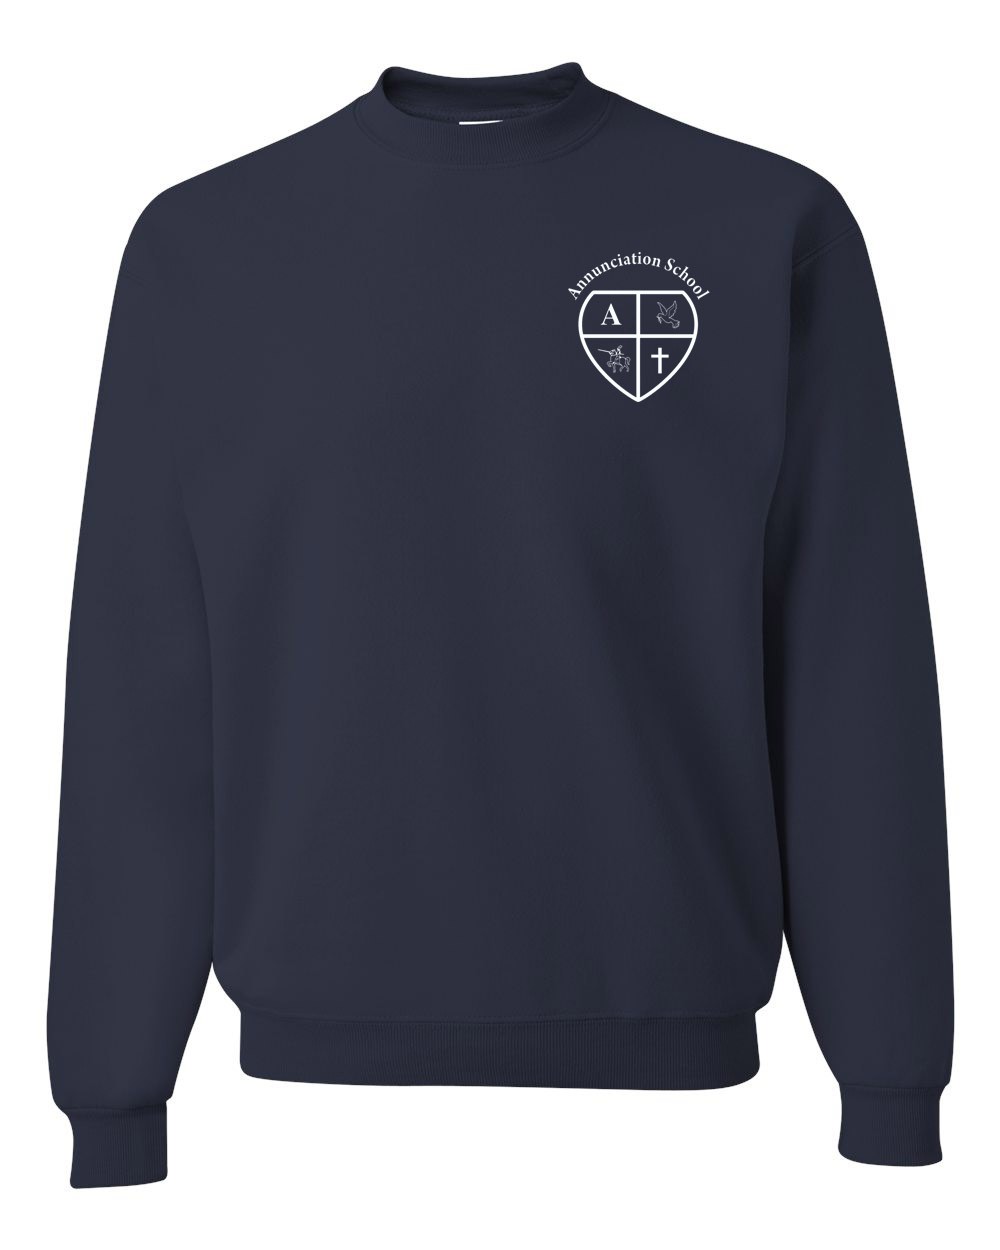 ANN Gym Sweatshirt w / School Logo